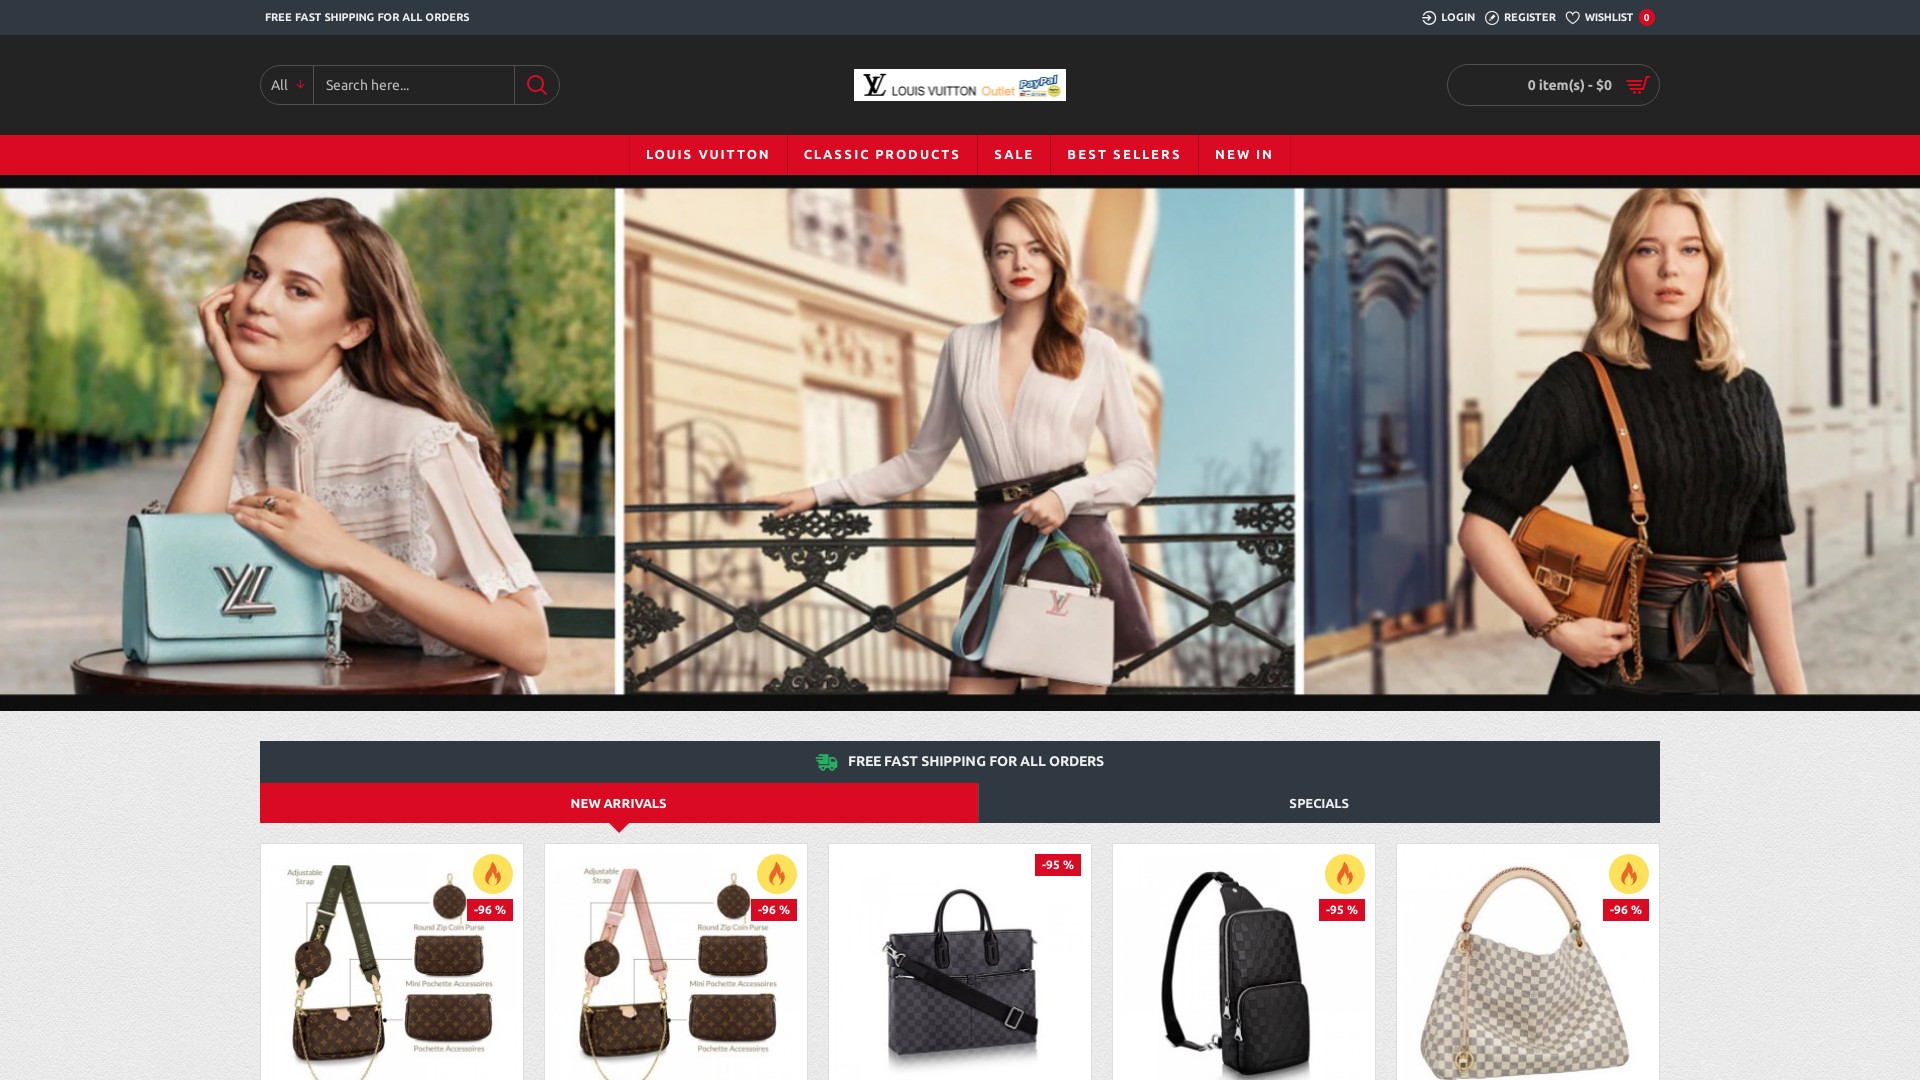 Luxury Design Bags at luxurydesignbags.com